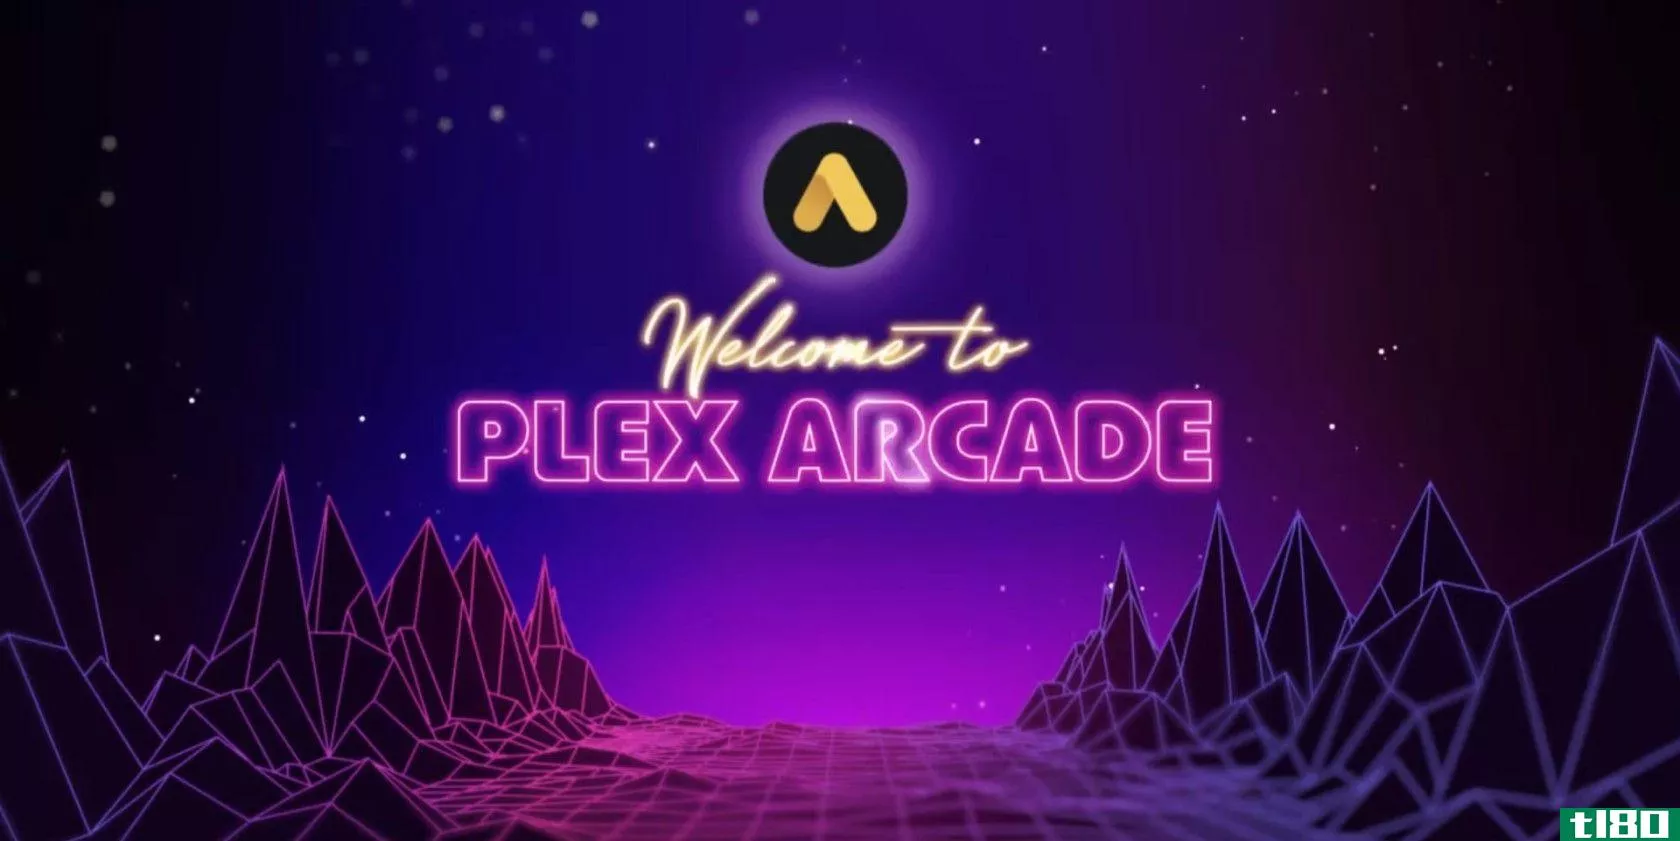 什么是plex arcade？它是如何工作的？